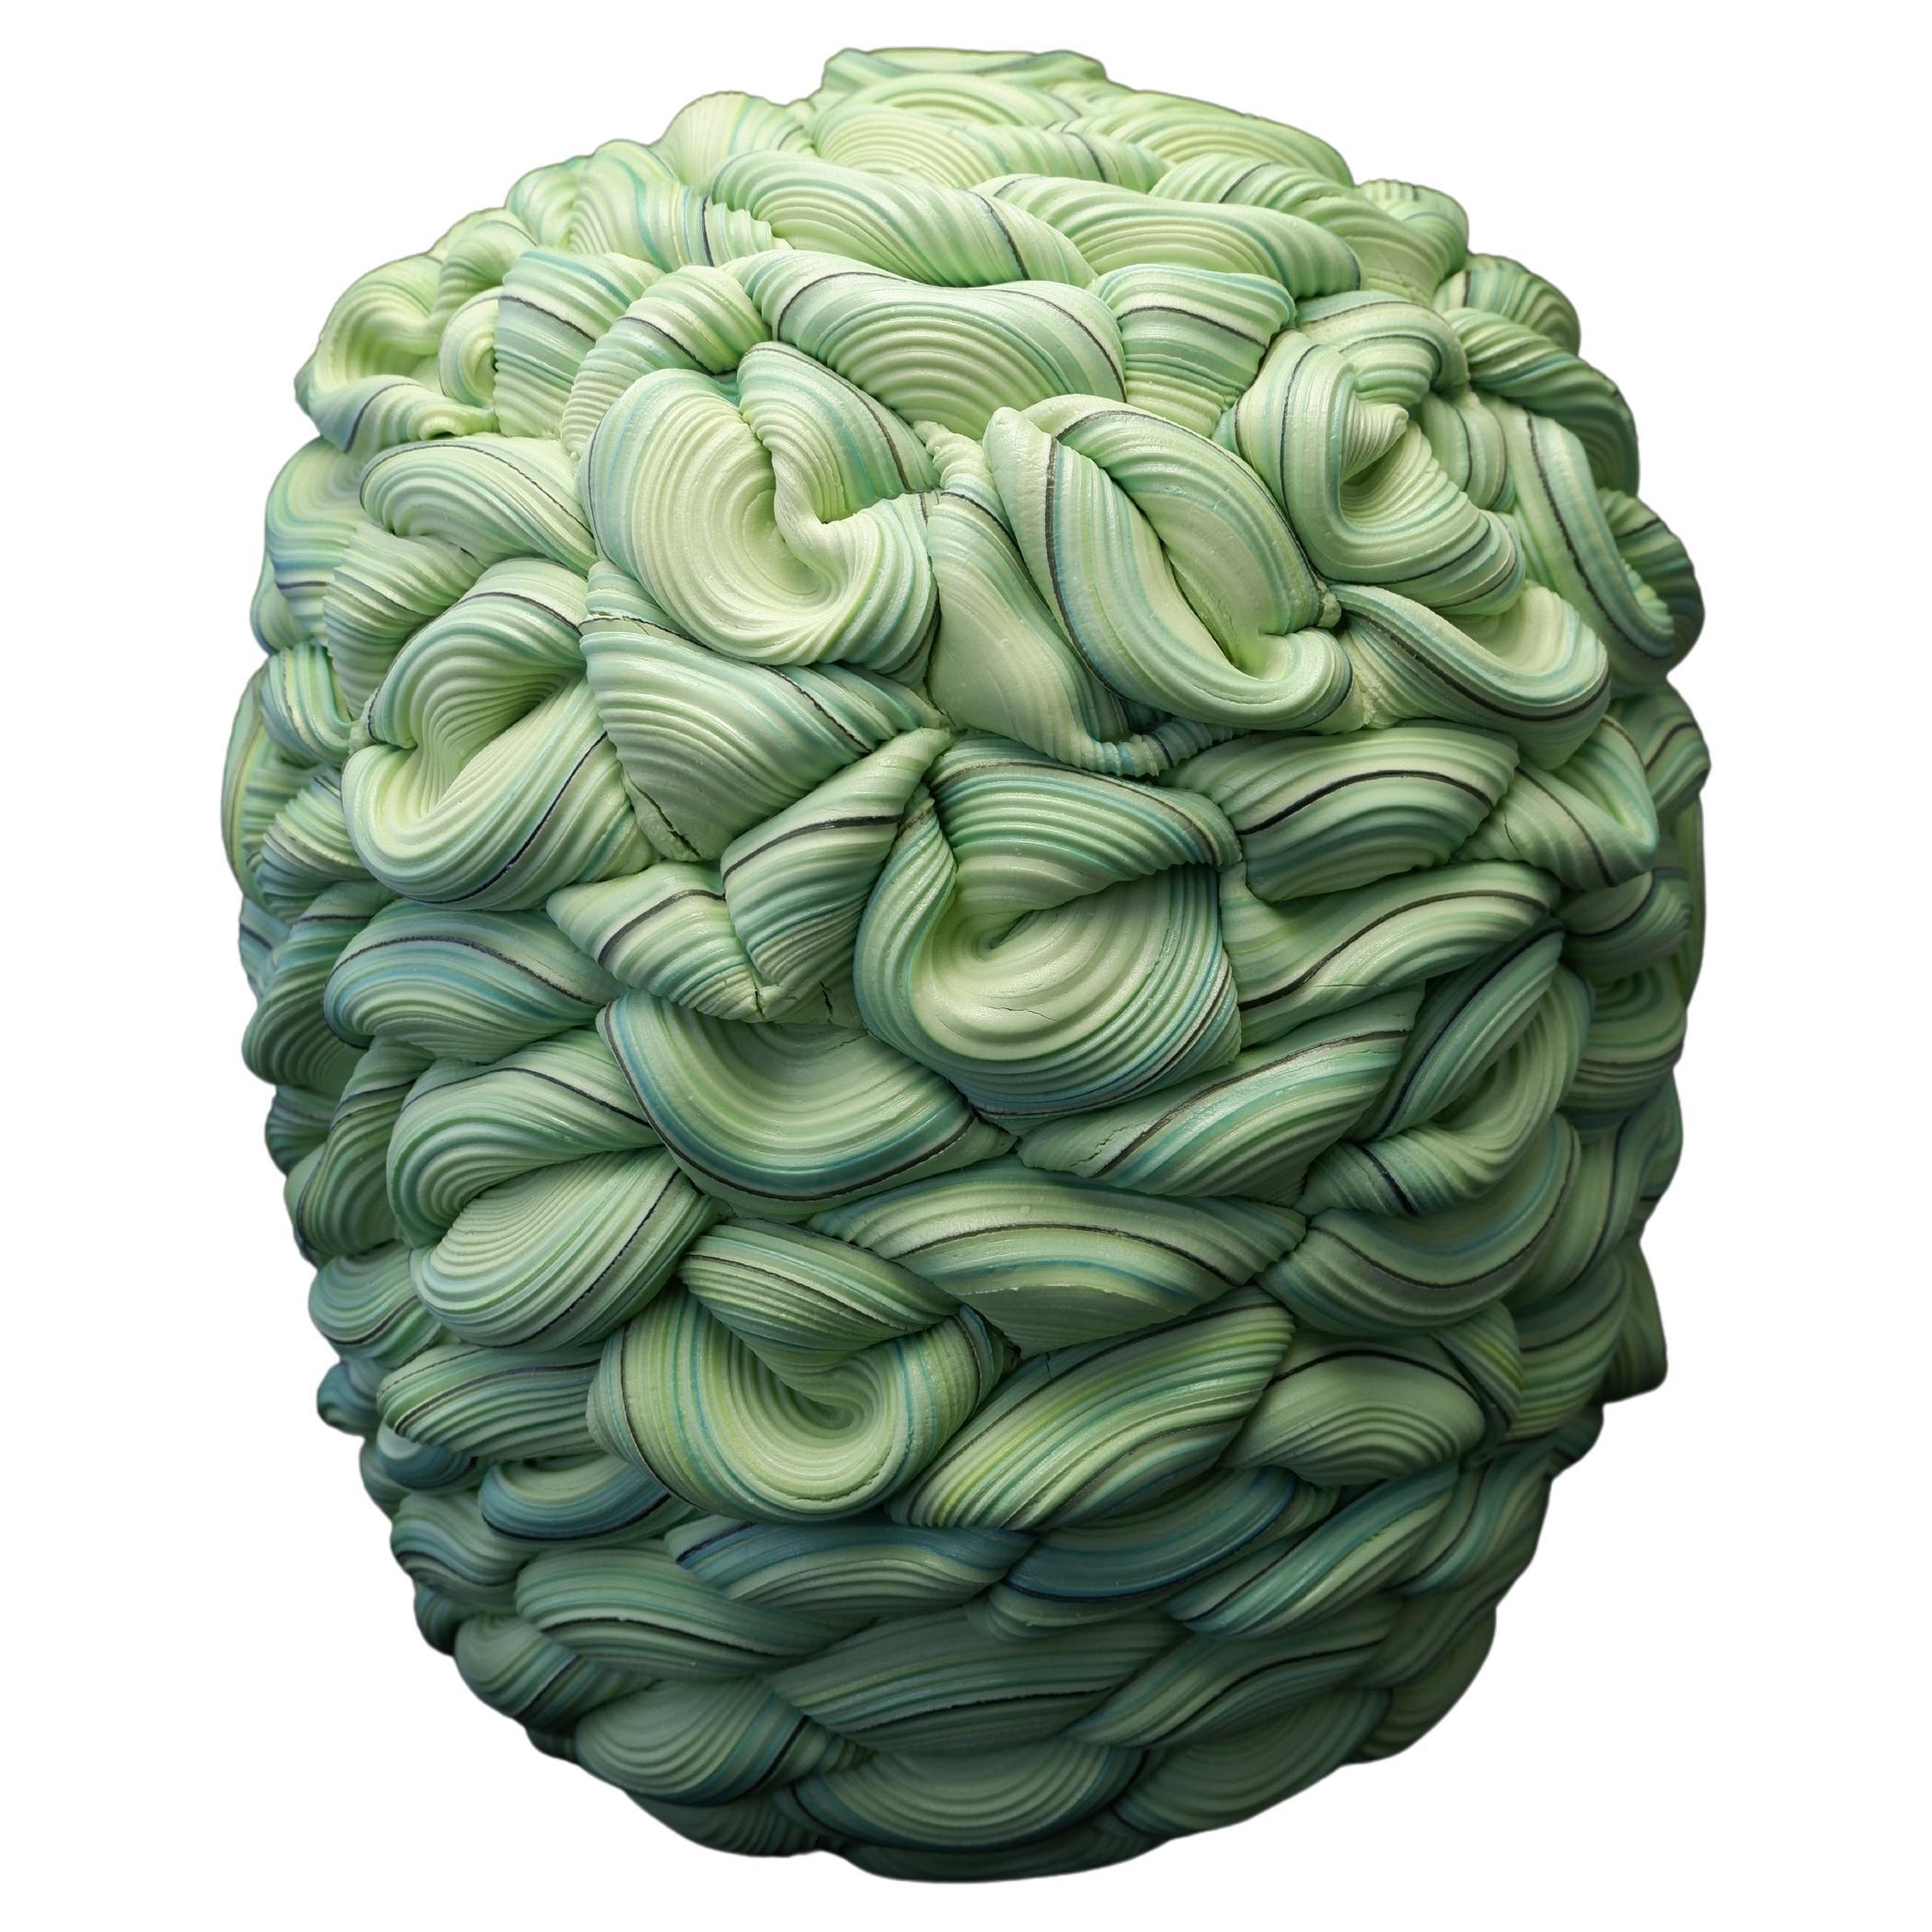 Einzigartiges, Contemporary Ceramic Handmade Vessel mit Grüntönen